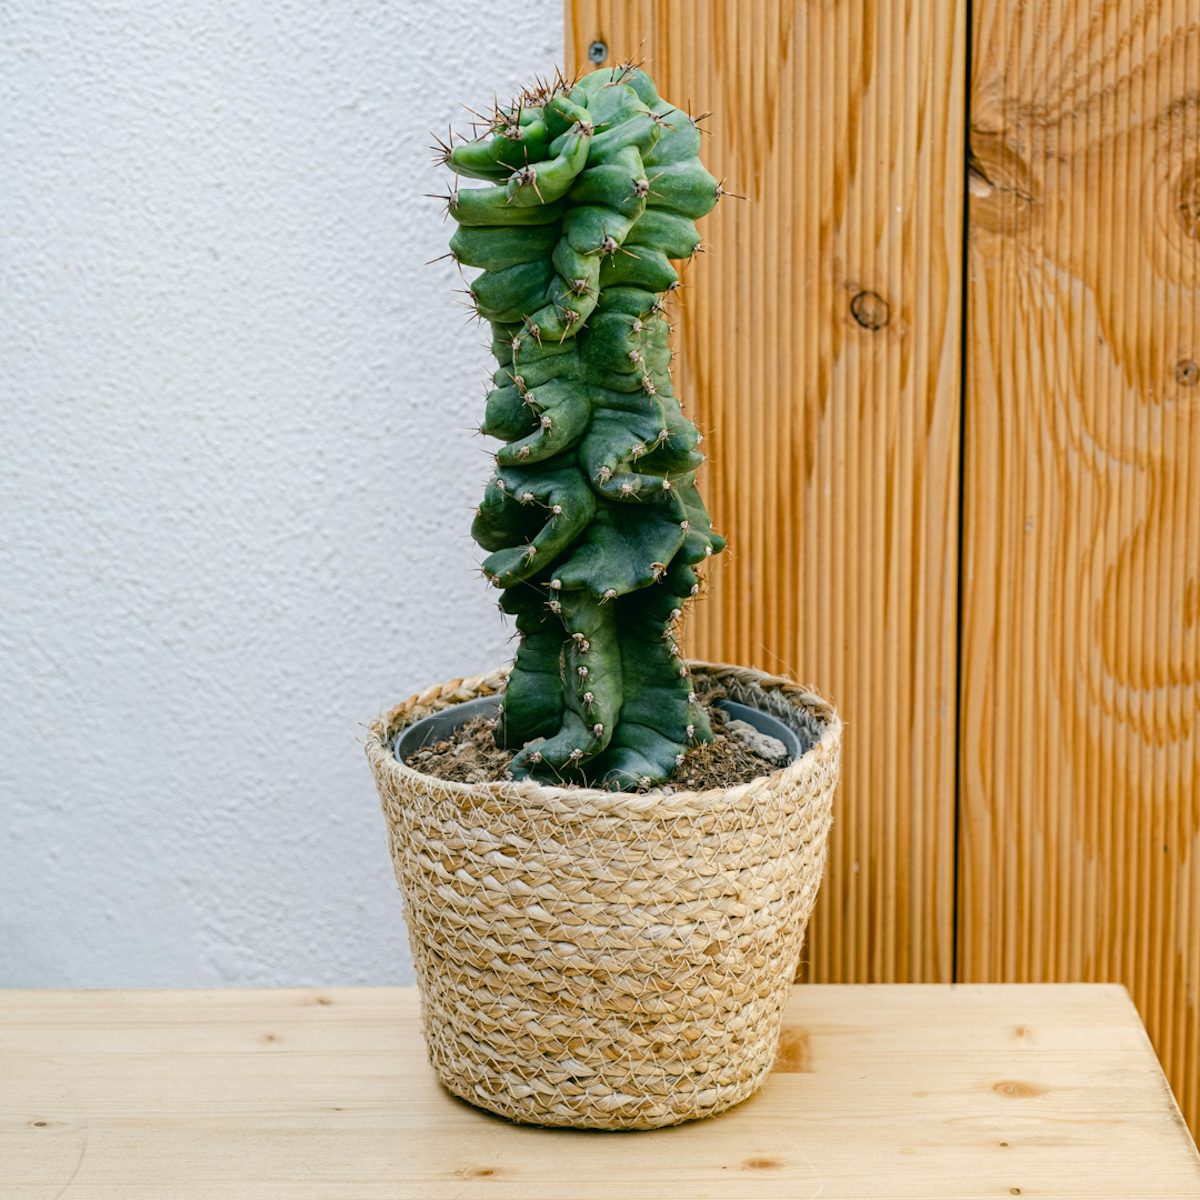 Spirale Kaktus